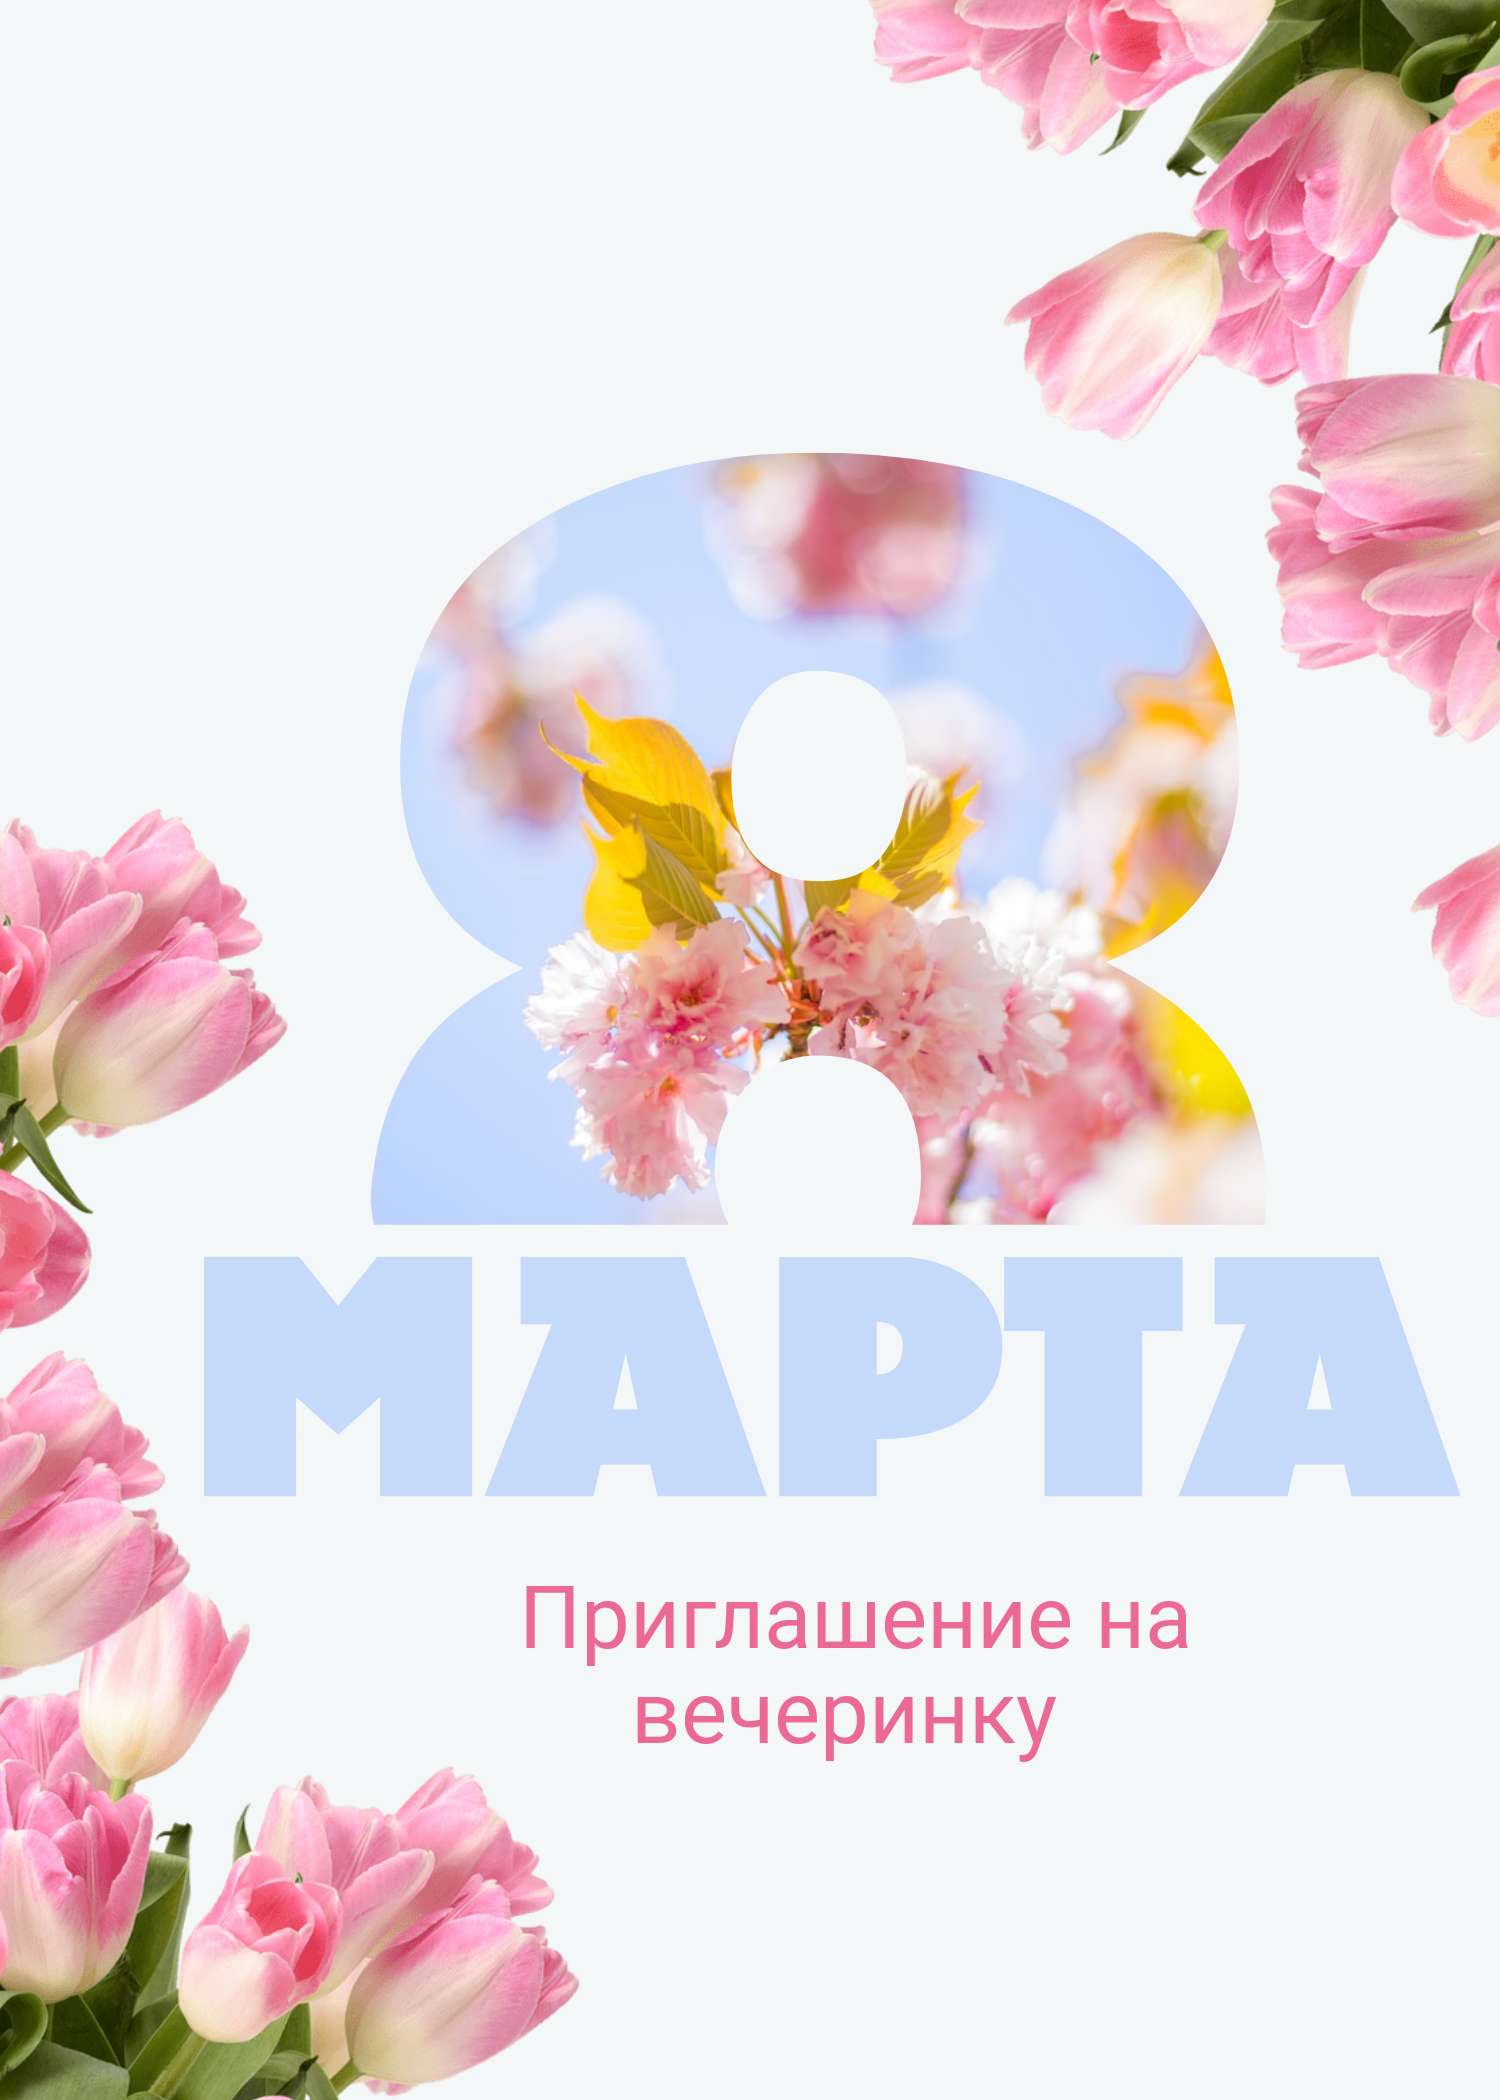 Приглашение на весеннюю вечеринку в честь 8 марта с большой цифрой восемь, украшенной бело розовыми тюльпанами